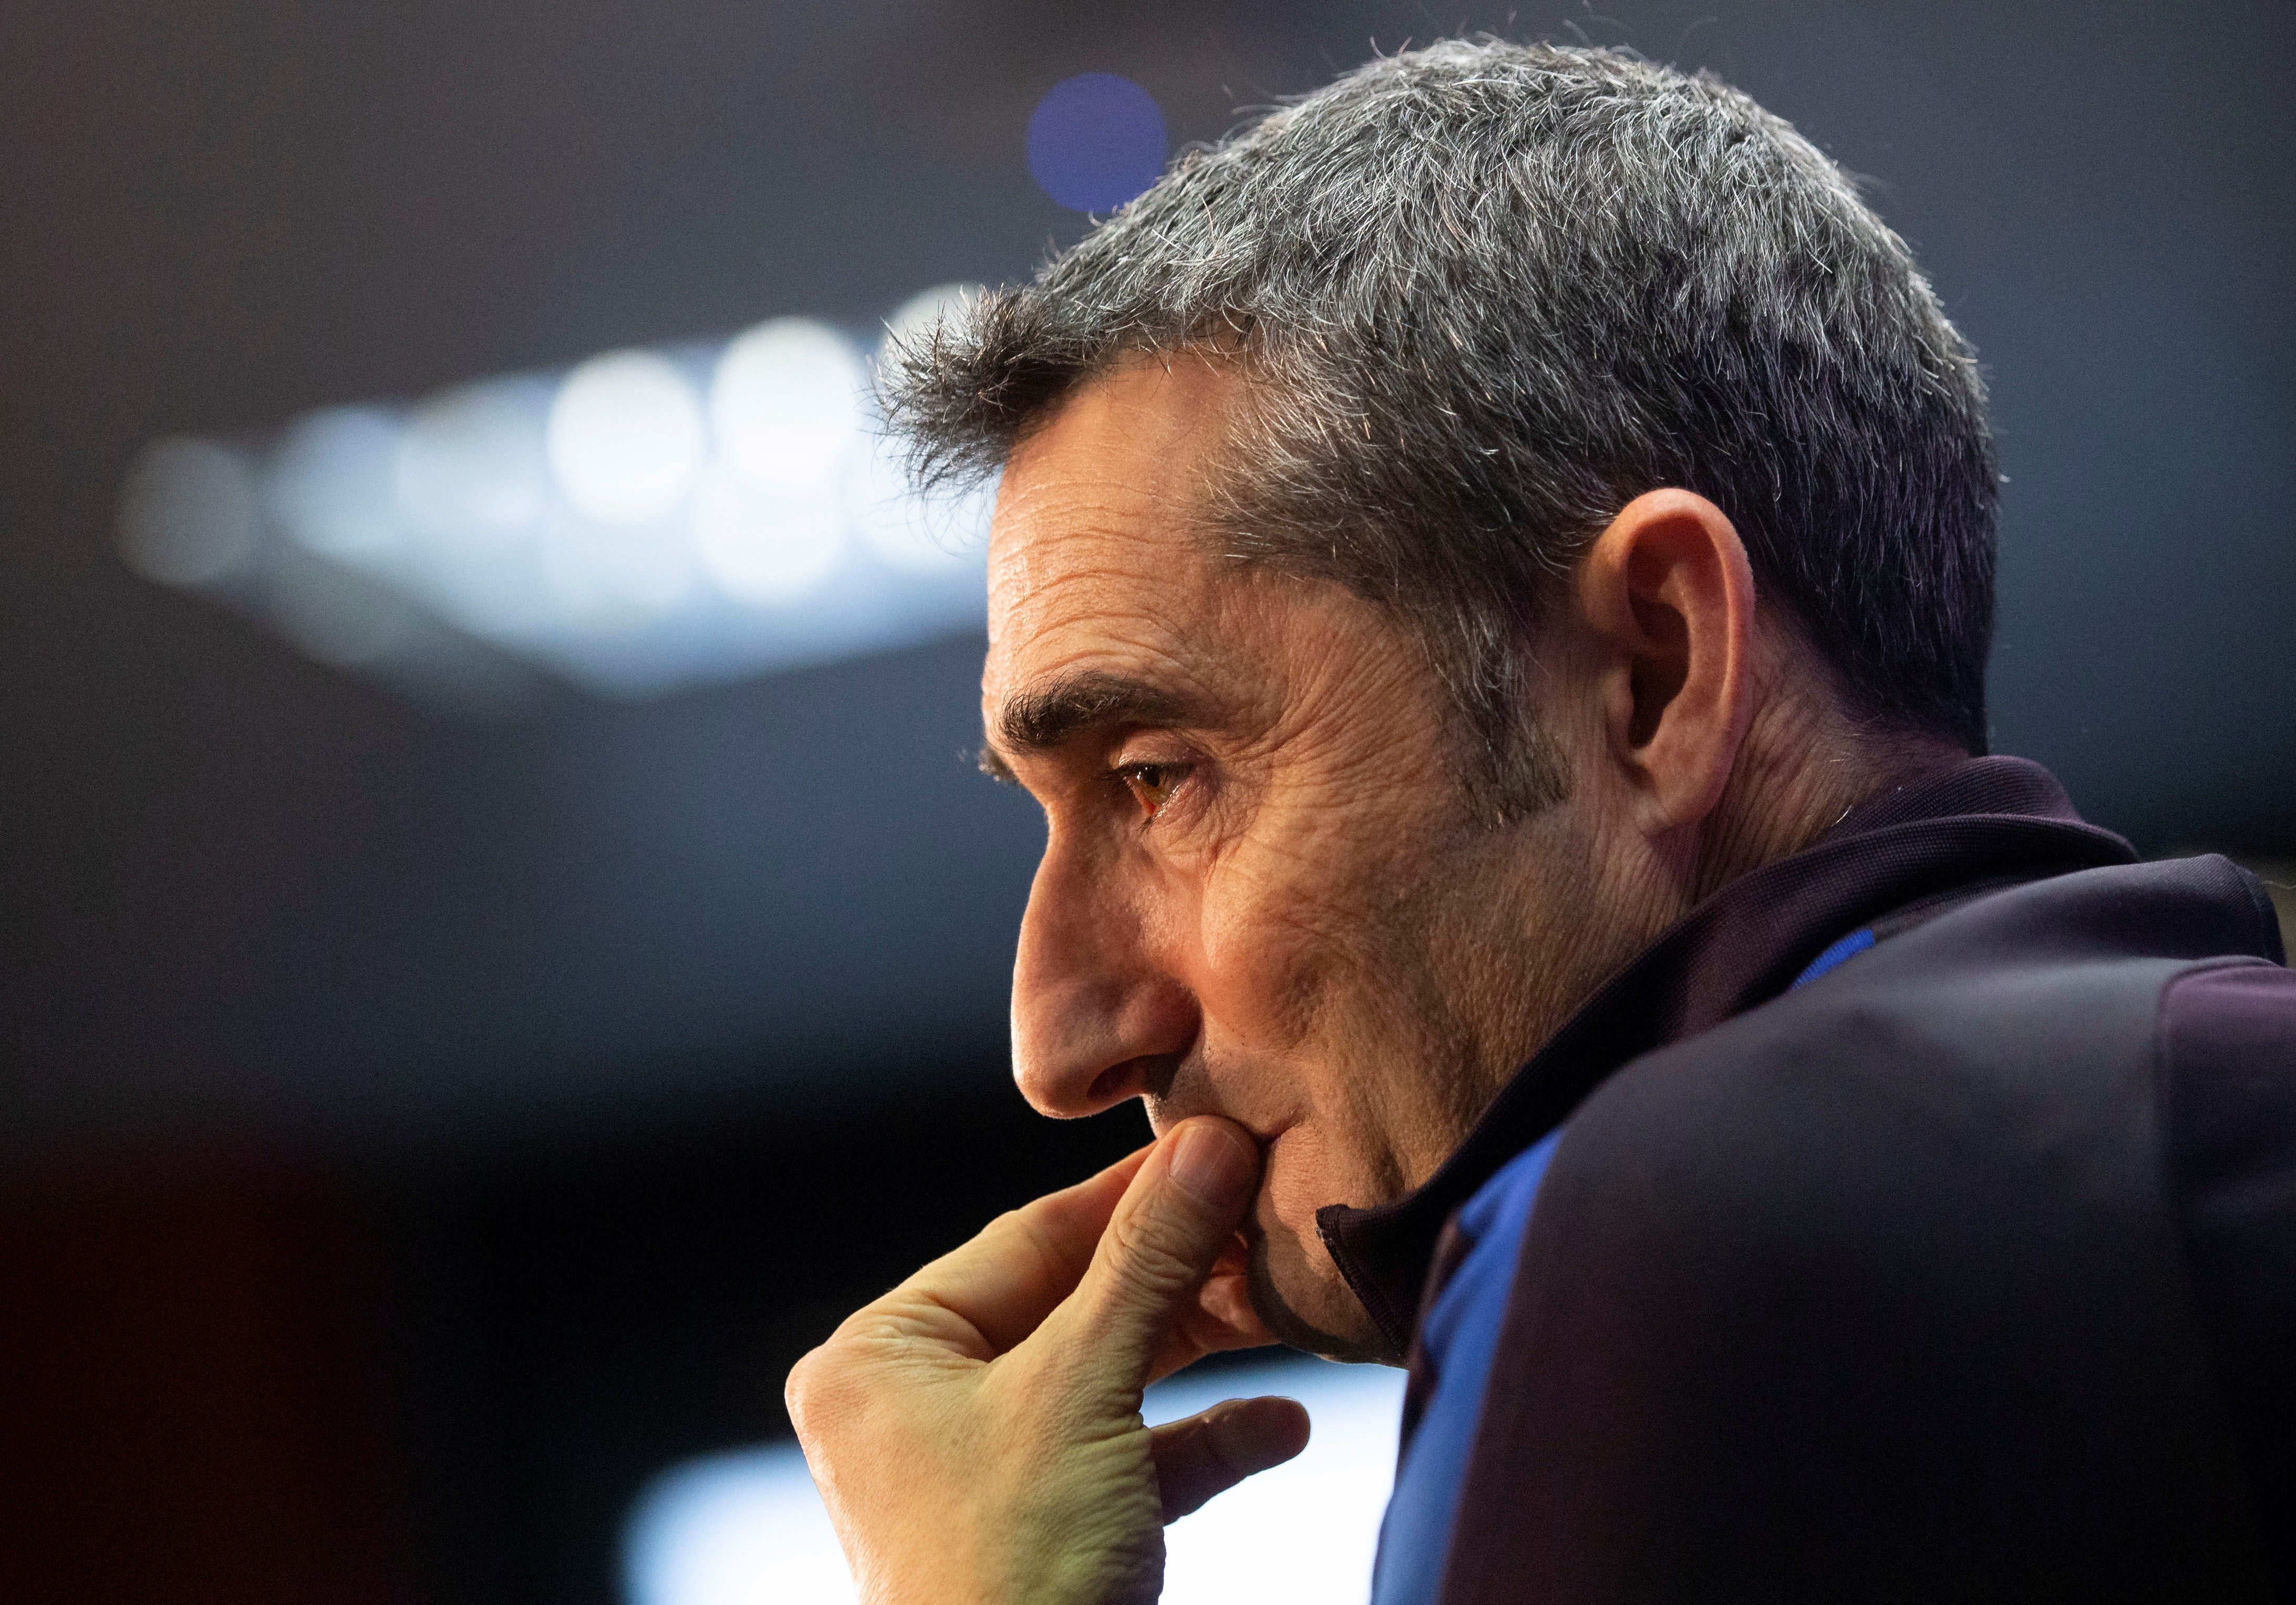 El entrenador del Barcelona Ernesto Valverde reconoce que su equipo sufrió mucho y les afectó la eliminación de la Champions pasada. (Foto Prensa Libre: EFE)